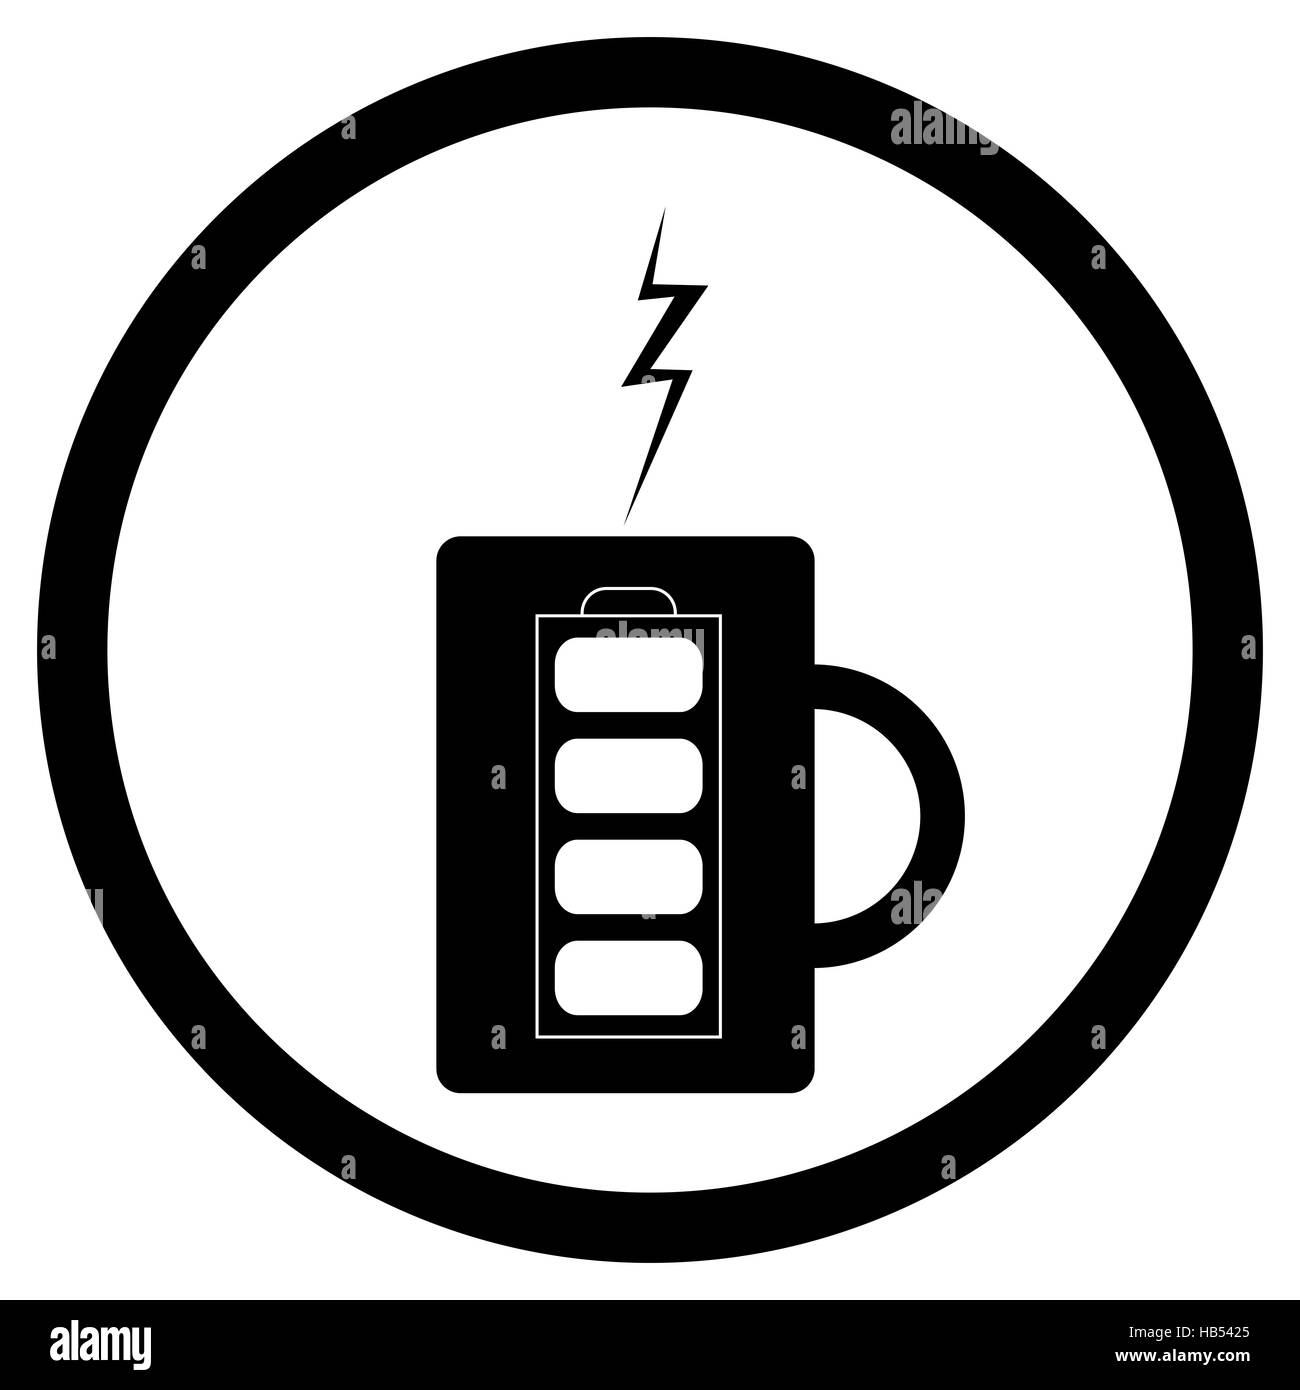 Energy mug with coffee or tea. Coffee mug and mug of tea, vector illustration Stock Photo